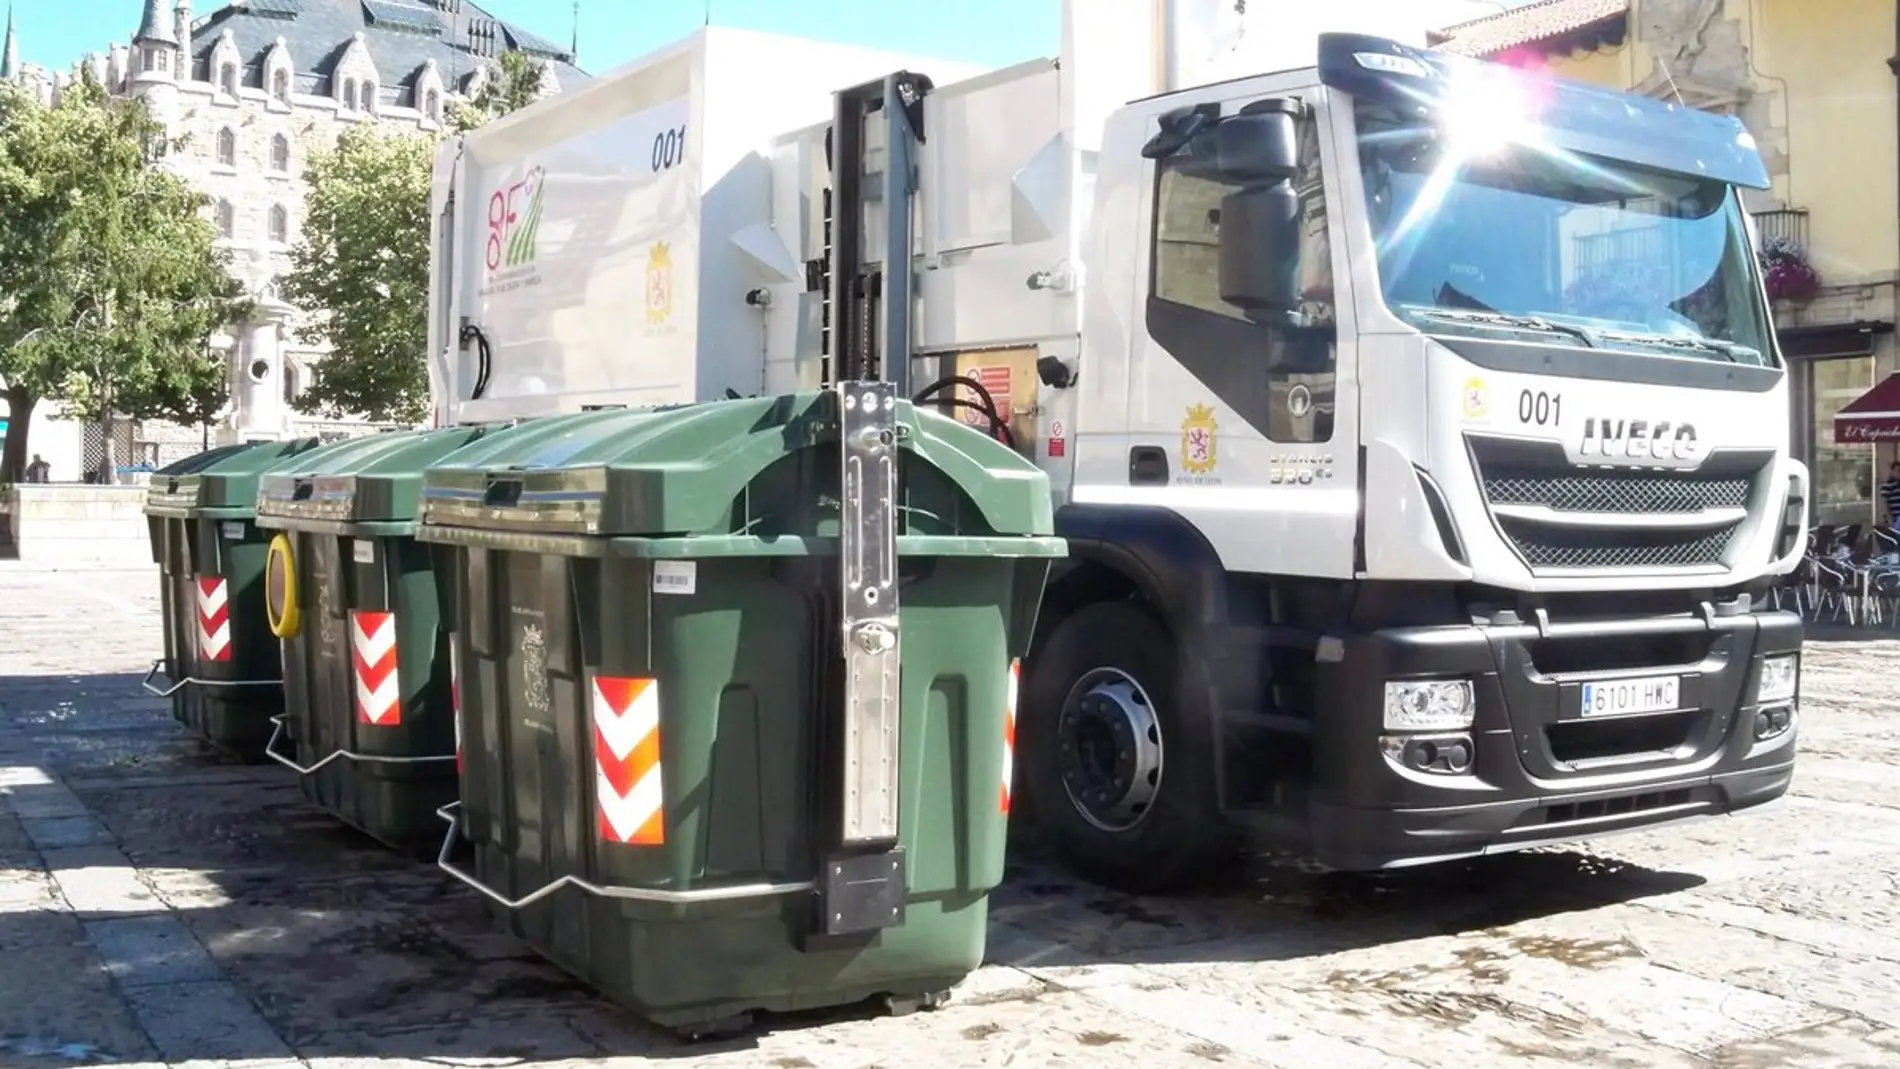 León implantará un sistema de recogida de residuos puerta a puerta en una decena de calles peatonales